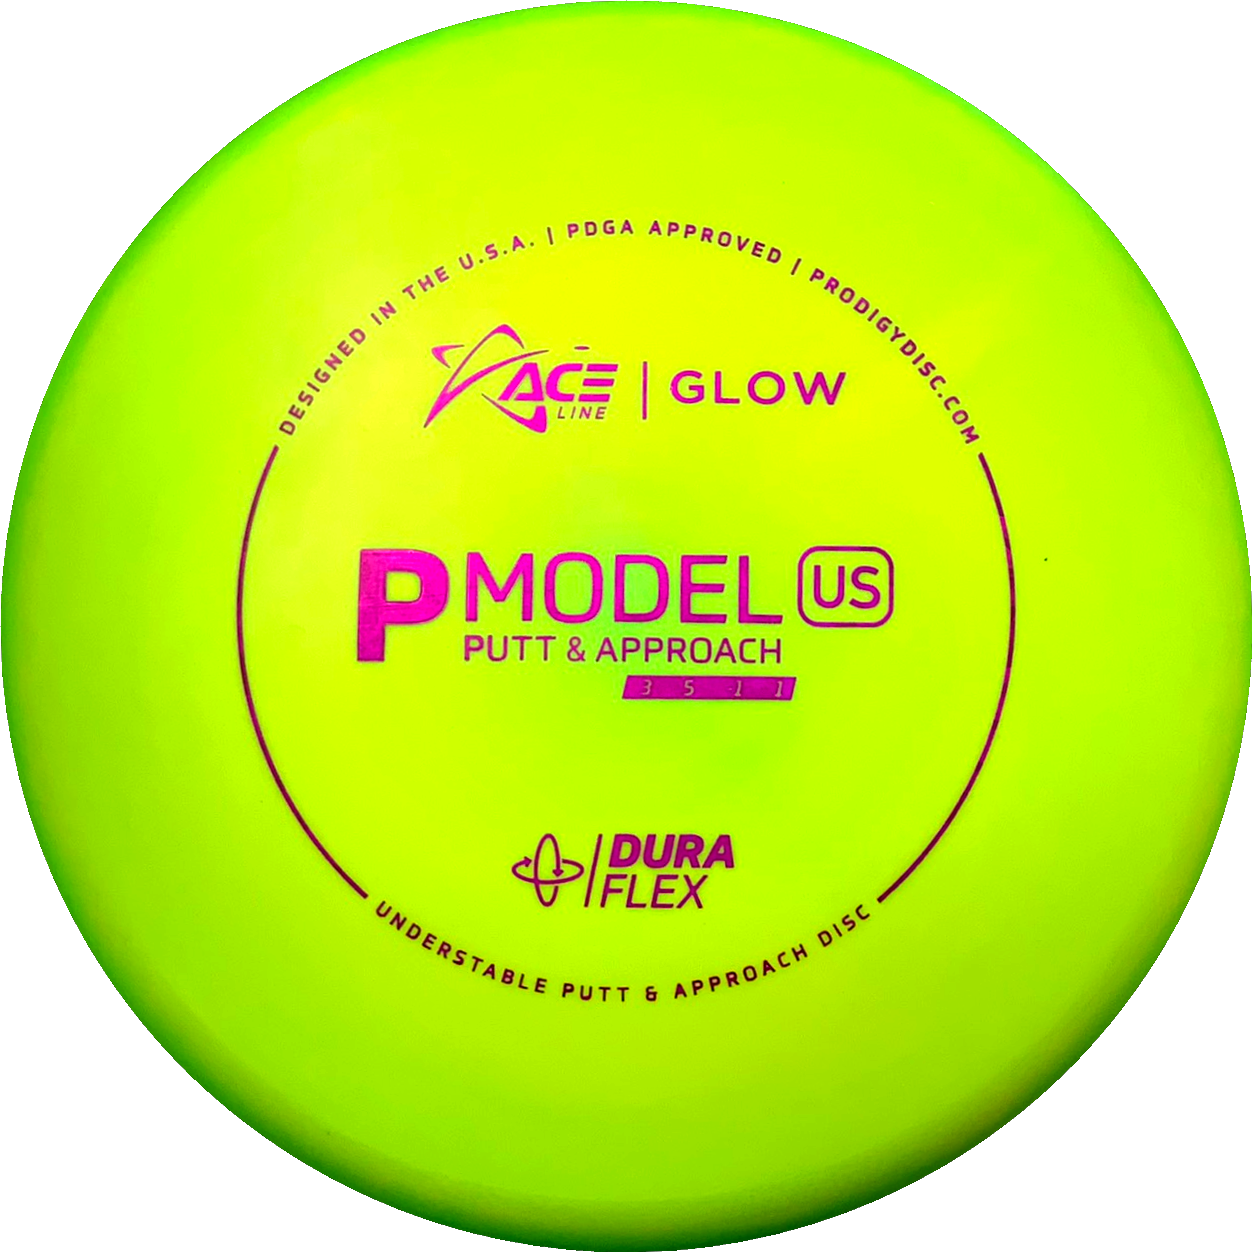 Prodigy DuraFlex Glow P Model US